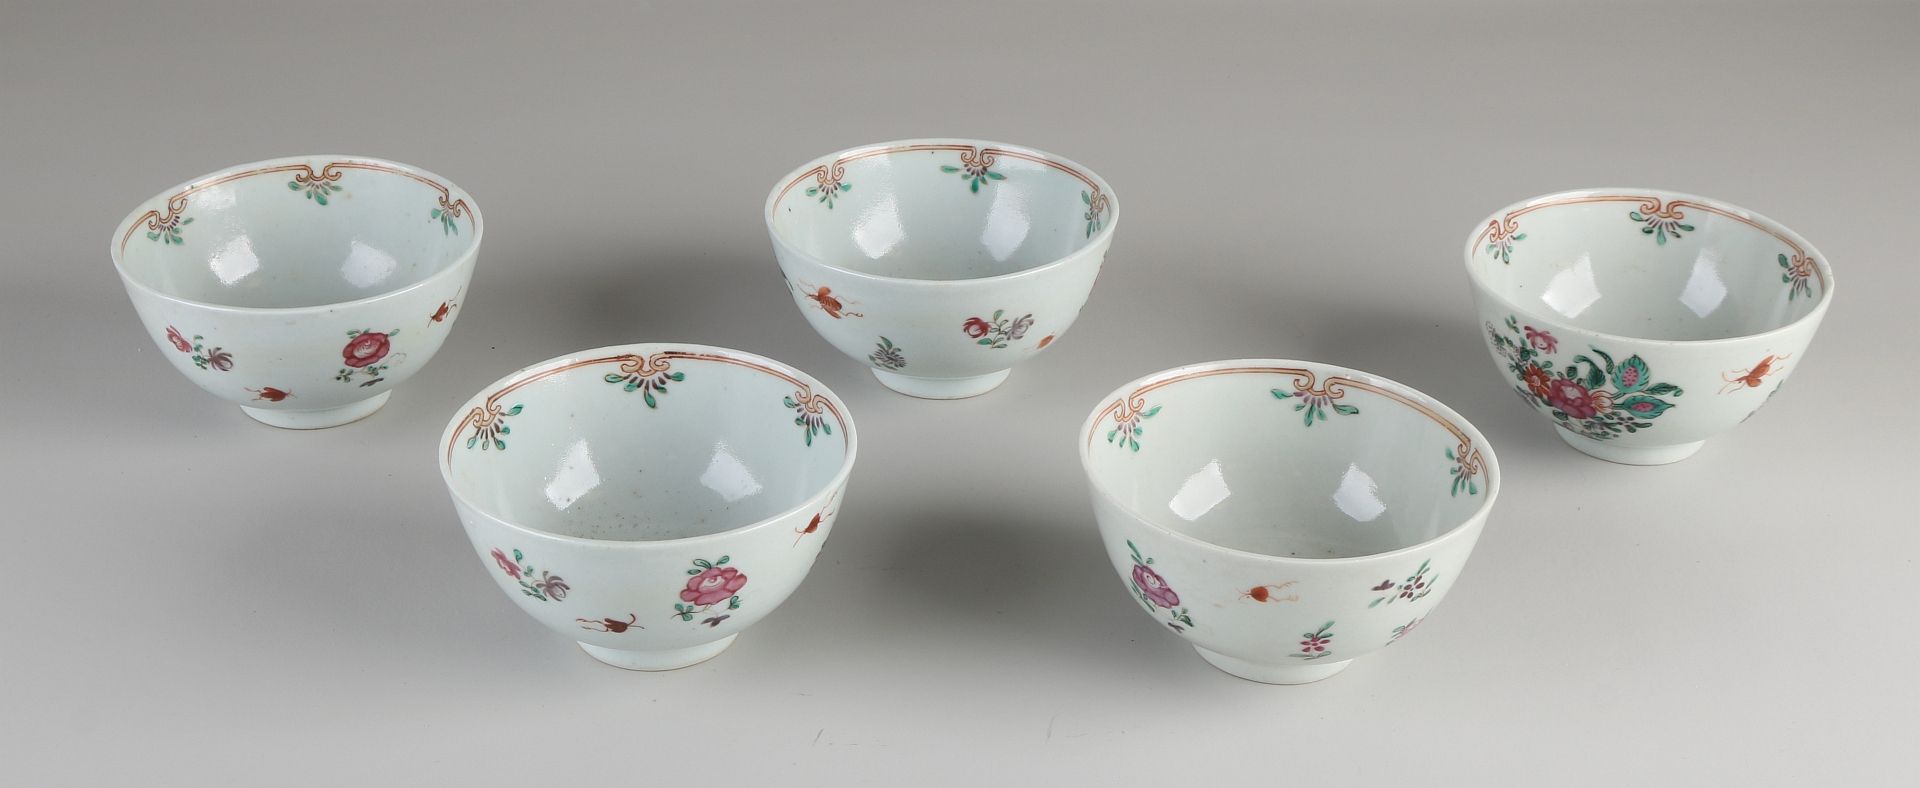 Fünf chinesische Porzellanschalen aus dem 19. Jahrhundert mit Blumen- / Insektendekor. Abmessunge